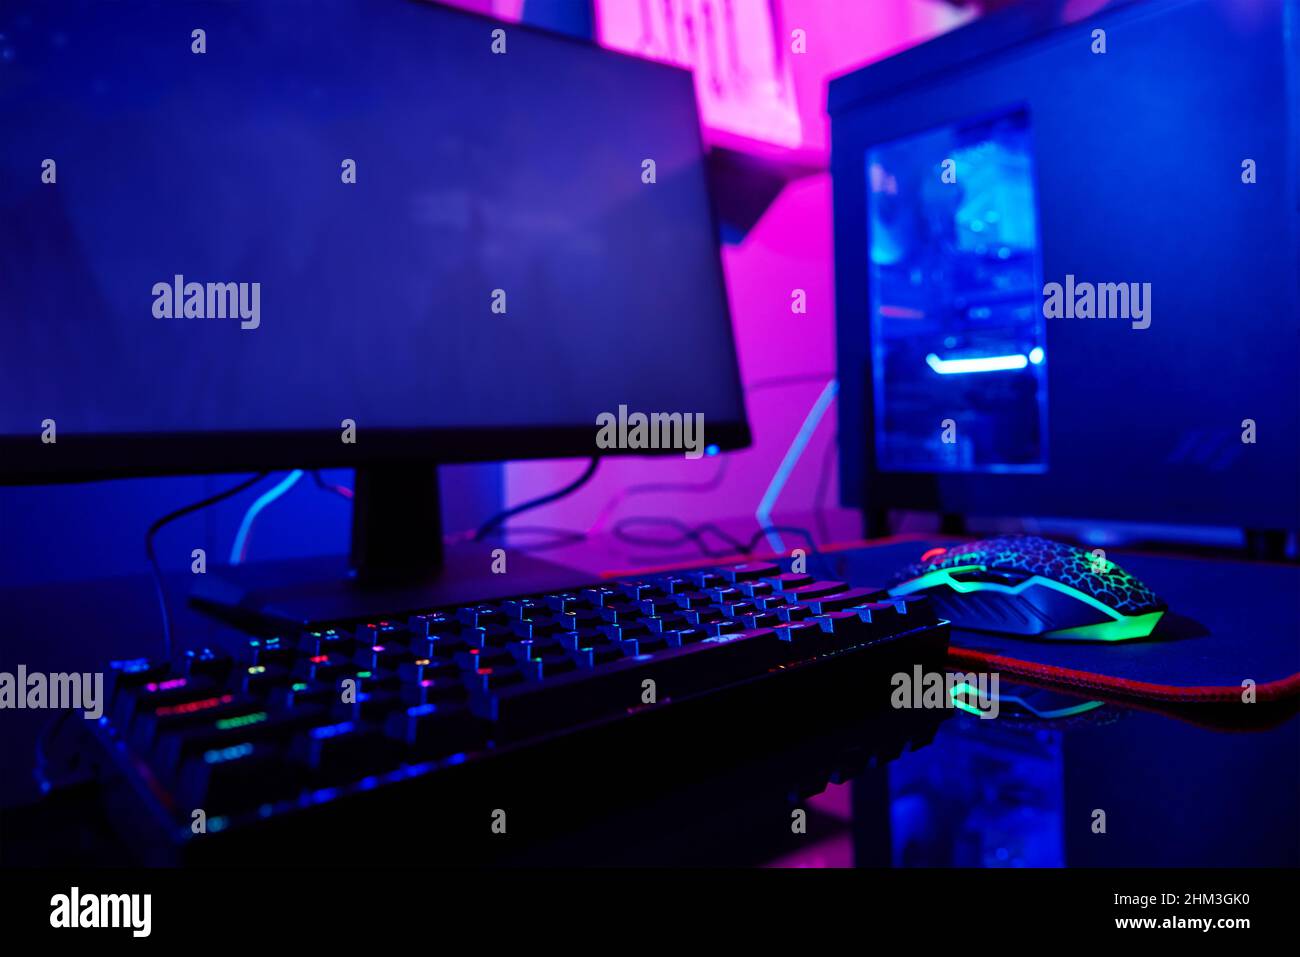 PC với bàn phím RGB dành cho máy tính chơi game và các trò chơi video với đèn neon là lựa chọn hoàn hảo cho những game thủ yêu thích. Các hình ảnh đầy sắc màu sáng tạo với đèn neon sẽ khiến cho bạn mê mẩn ngay lần đầu trông thấy.